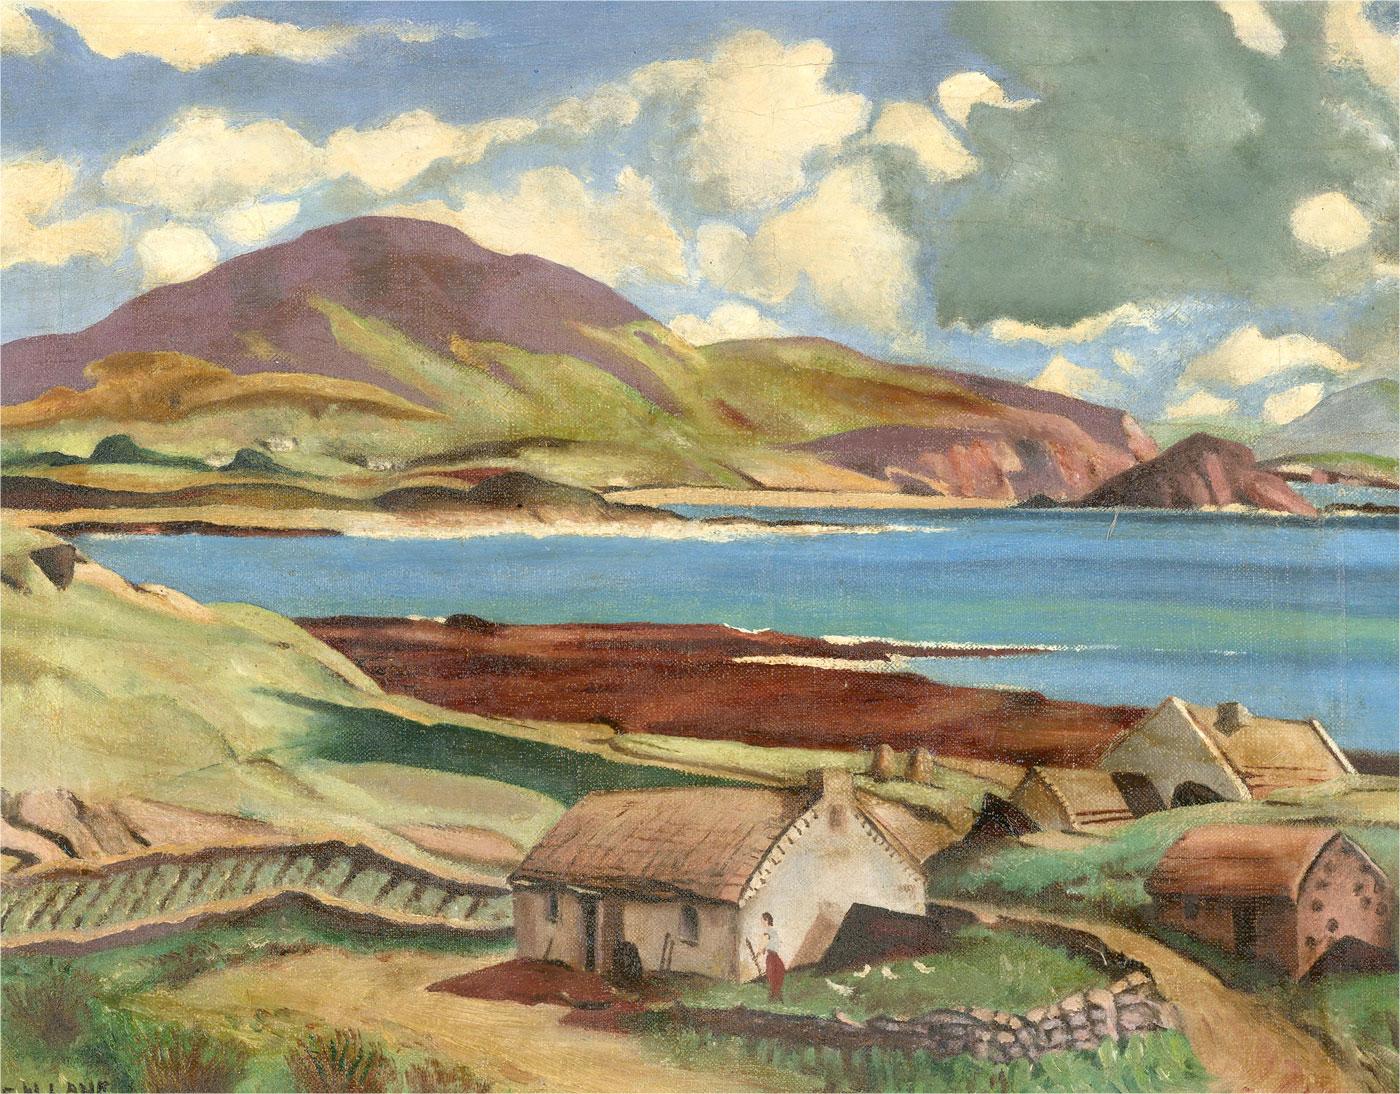 Un paysage expressif et stylisé à l'huile avec des clins d'œil au style de Paul Nash. La scène montre une vue panoramique d'un beau lac entouré de douces collines. Un chalet est niché au premier plan sous un ciel bleu. L'artiste a signé dans le coin